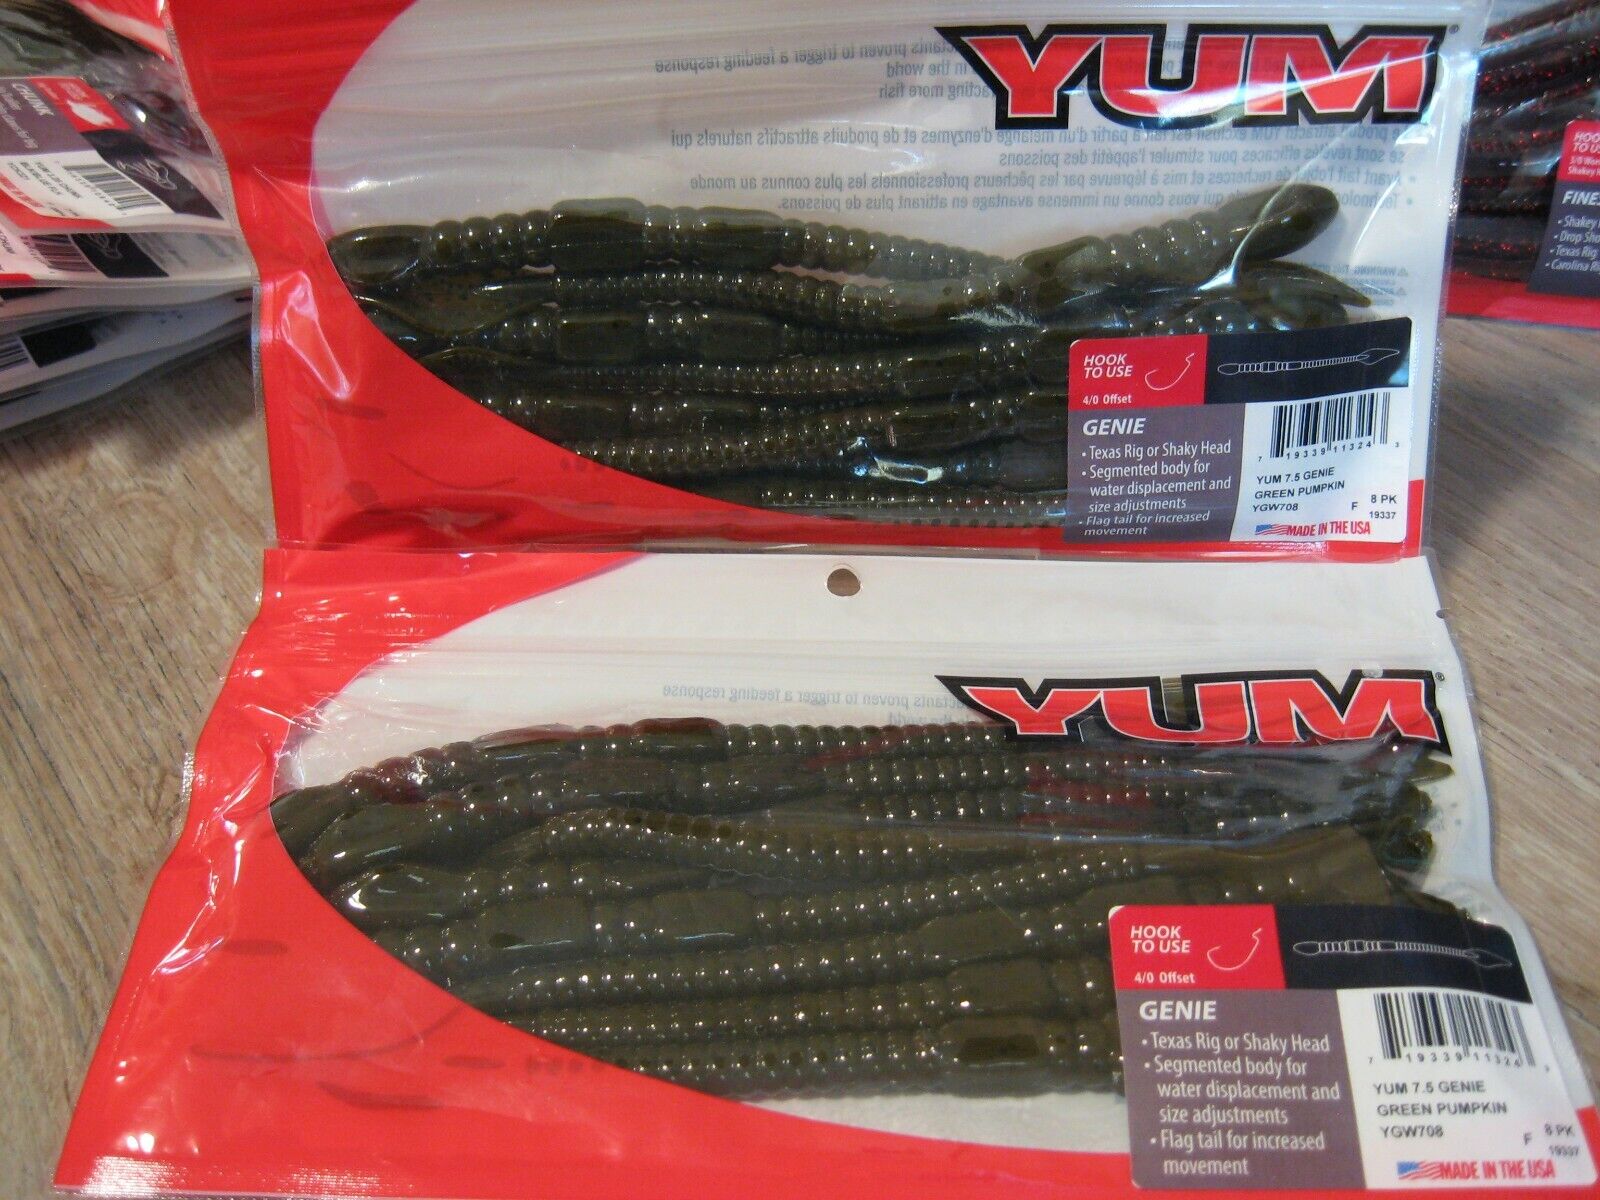 2 Packs YUM 7.5 Genie Worms Soft Plastic Fishing Baits Green Pumpkin YGW708